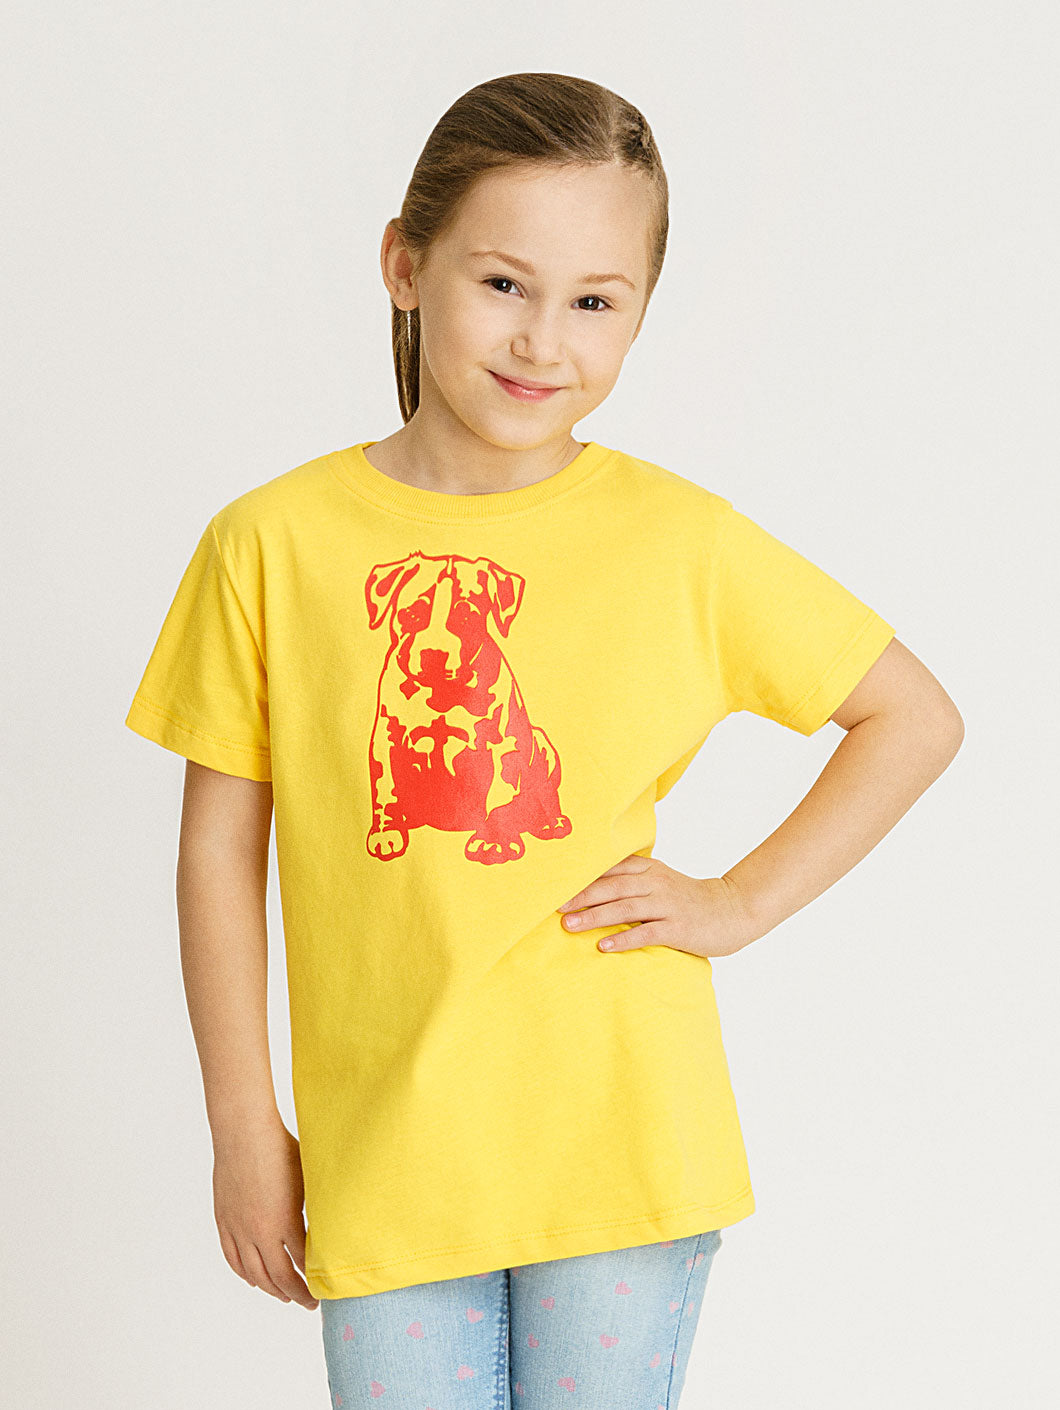 Babystaff Kids Logo T-Shirt gelb - 6